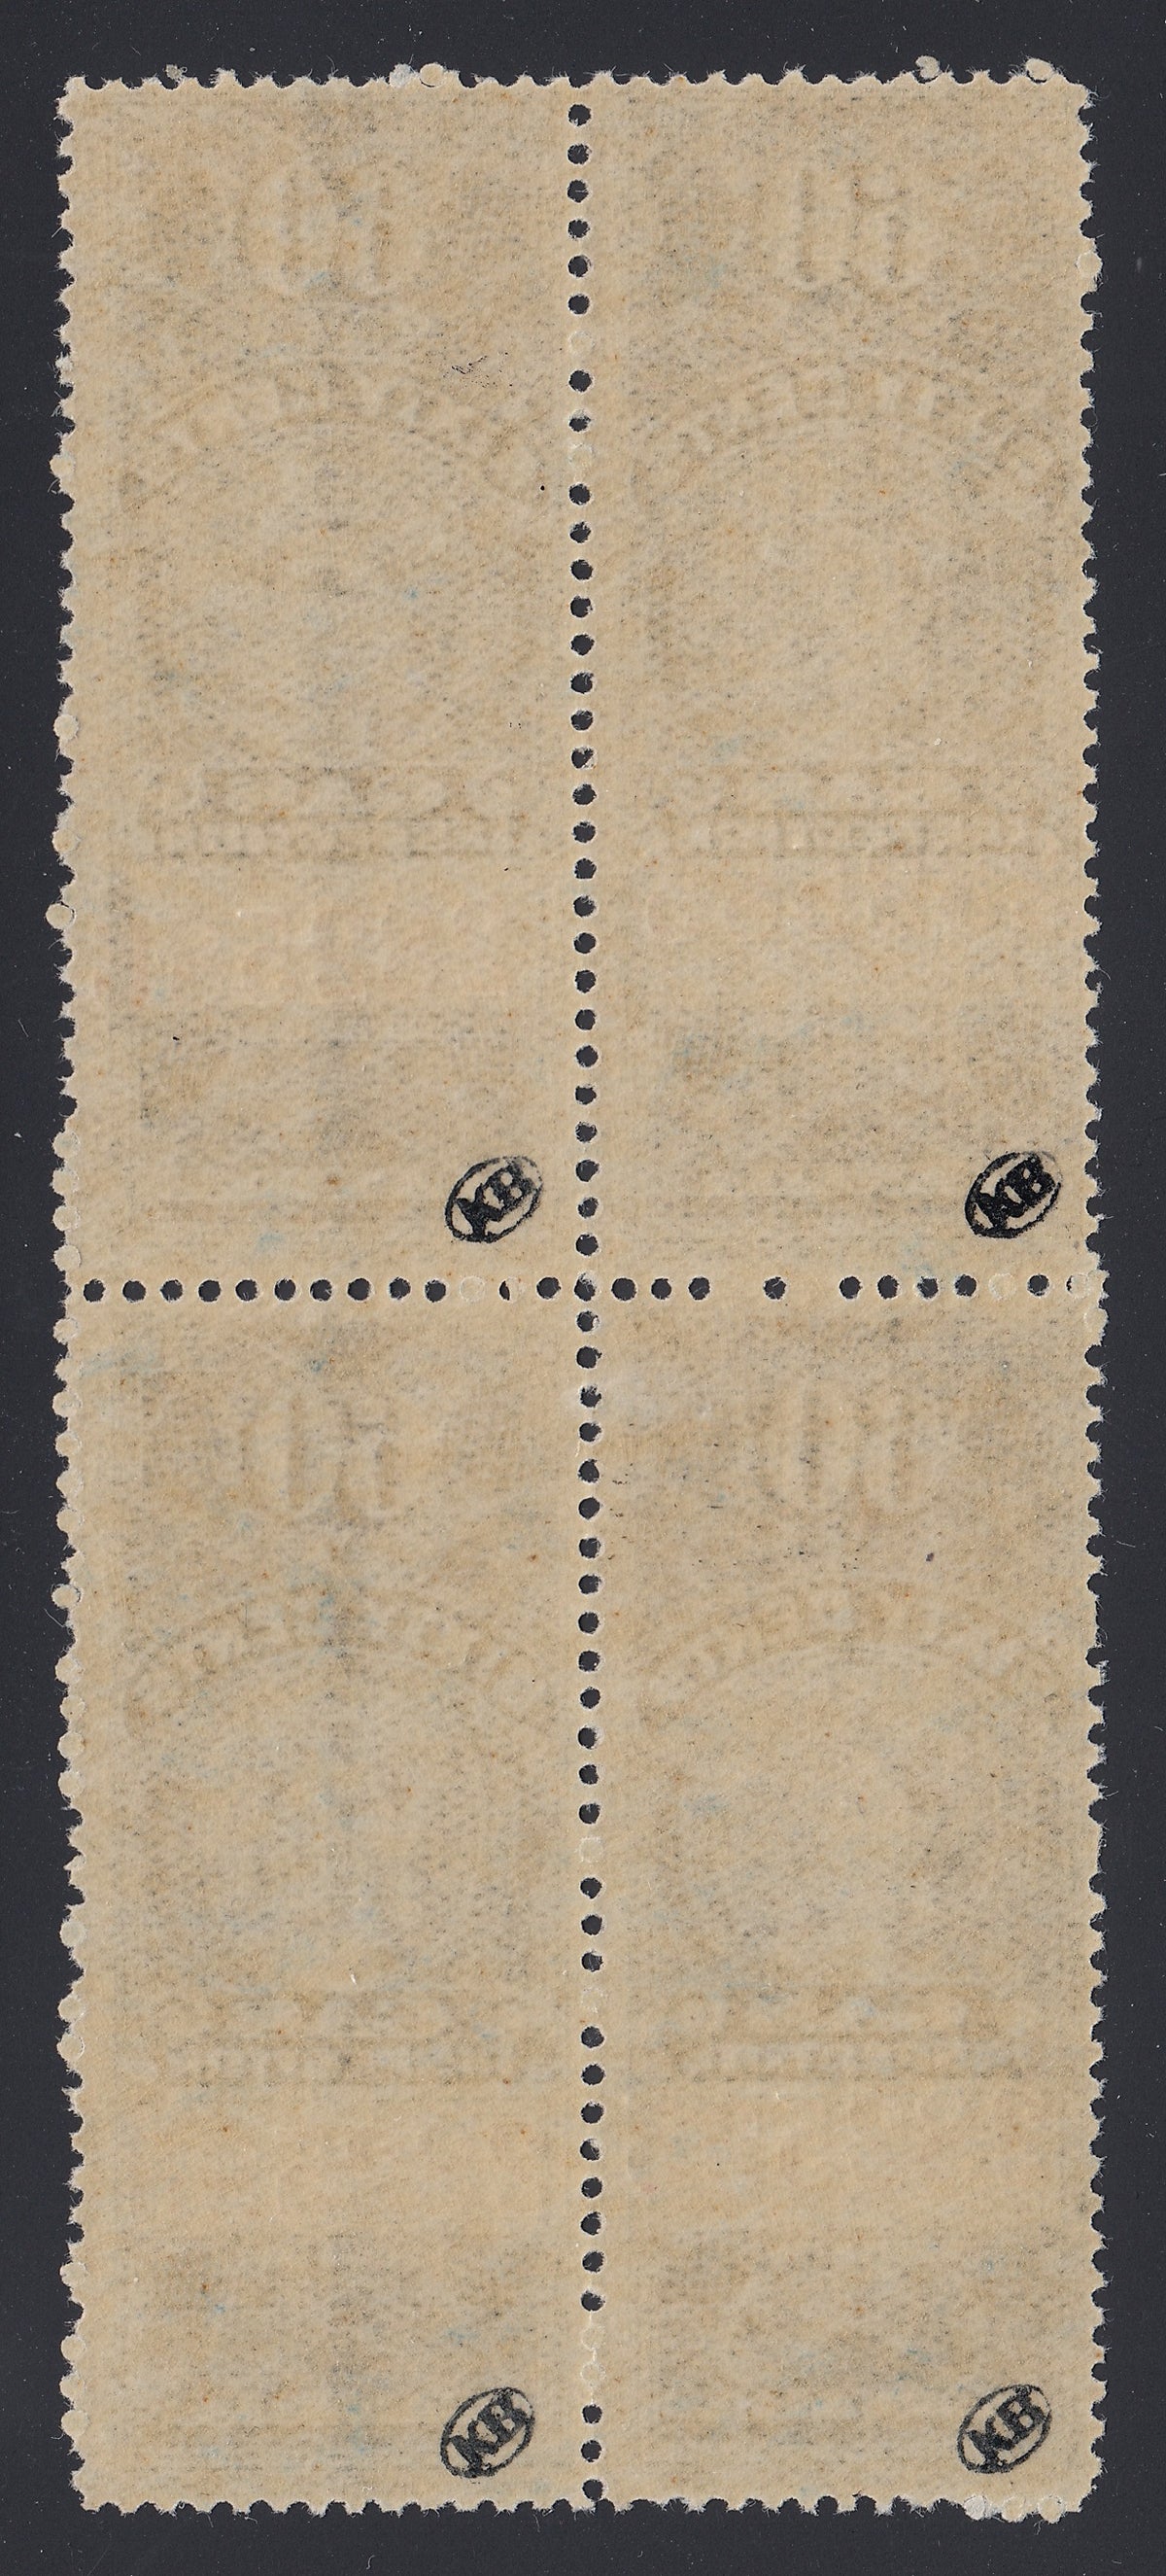 0020FG2106 - FG20 - Mint Block, Stitch Watermark